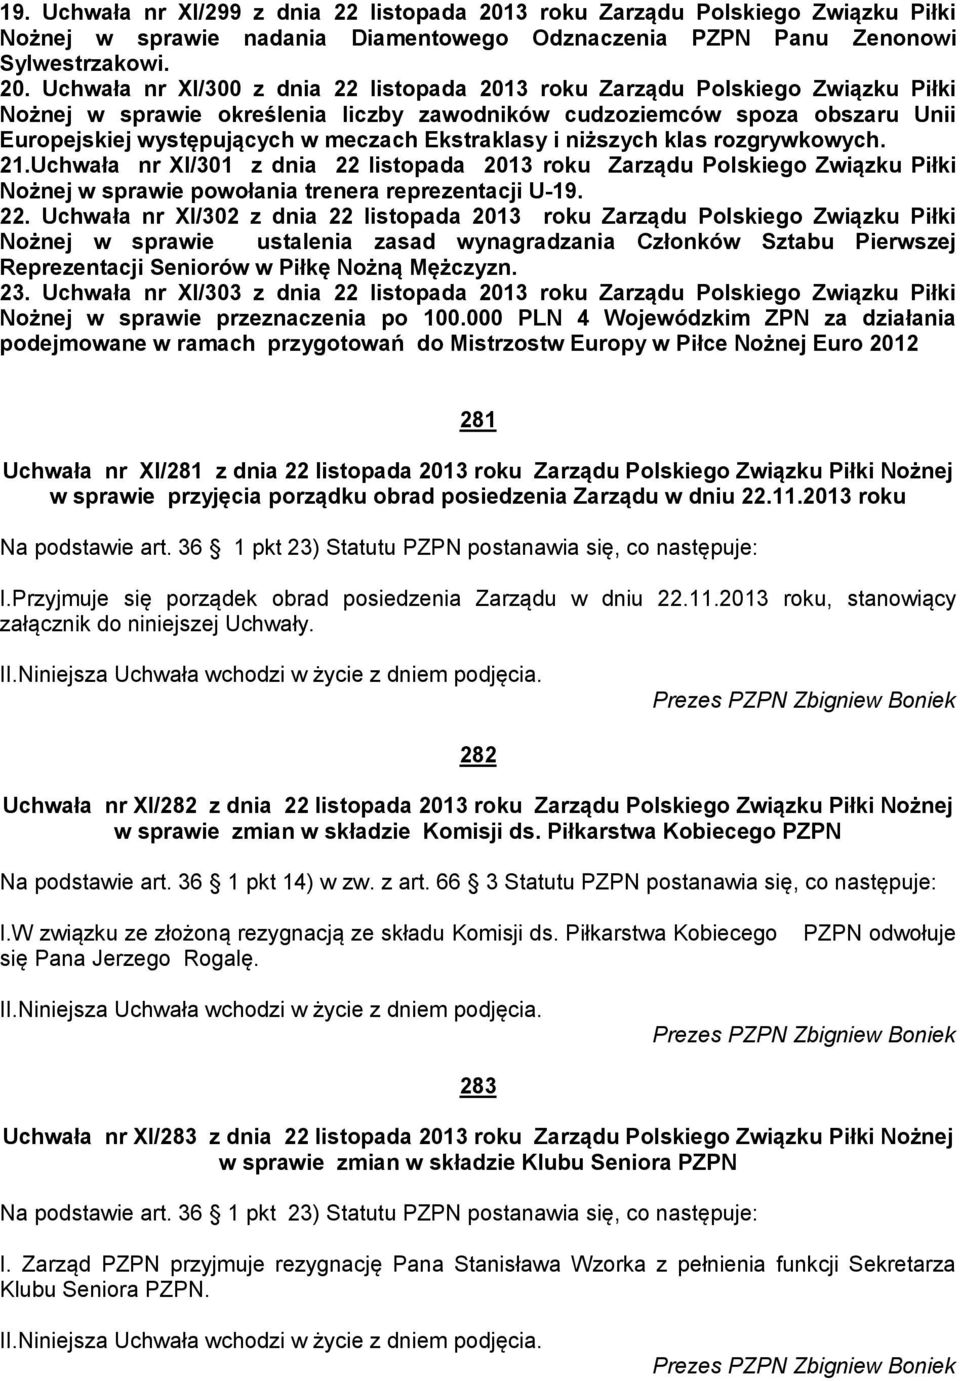 Uchwała nr XI/300 z dnia 22 listopada 2013 roku Zarządu Polskiego Związku Piłki Nożnej w sprawie określenia liczby zawodników cudzoziemców spoza obszaru Unii Europejskiej występujących w meczach